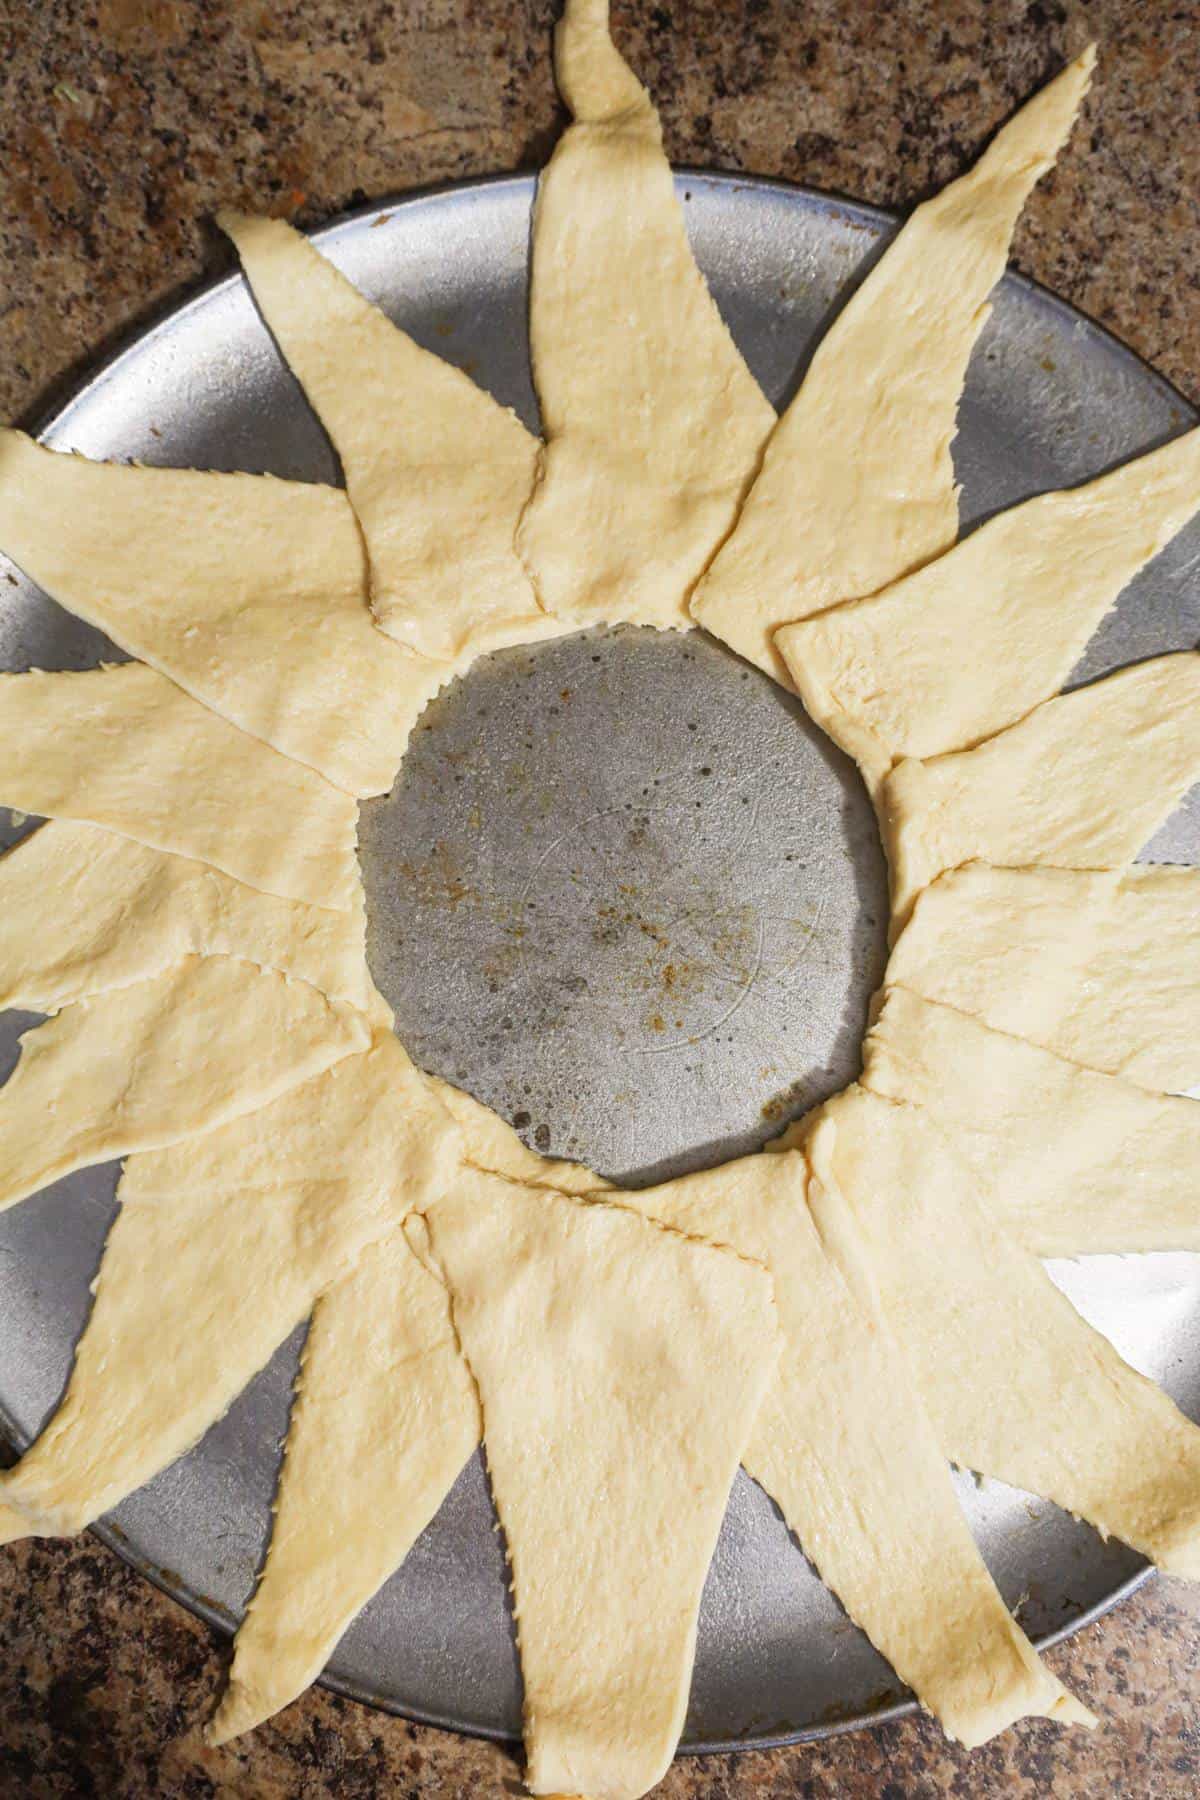 pillsbury crescent dough in a ring shape on a baking sheet